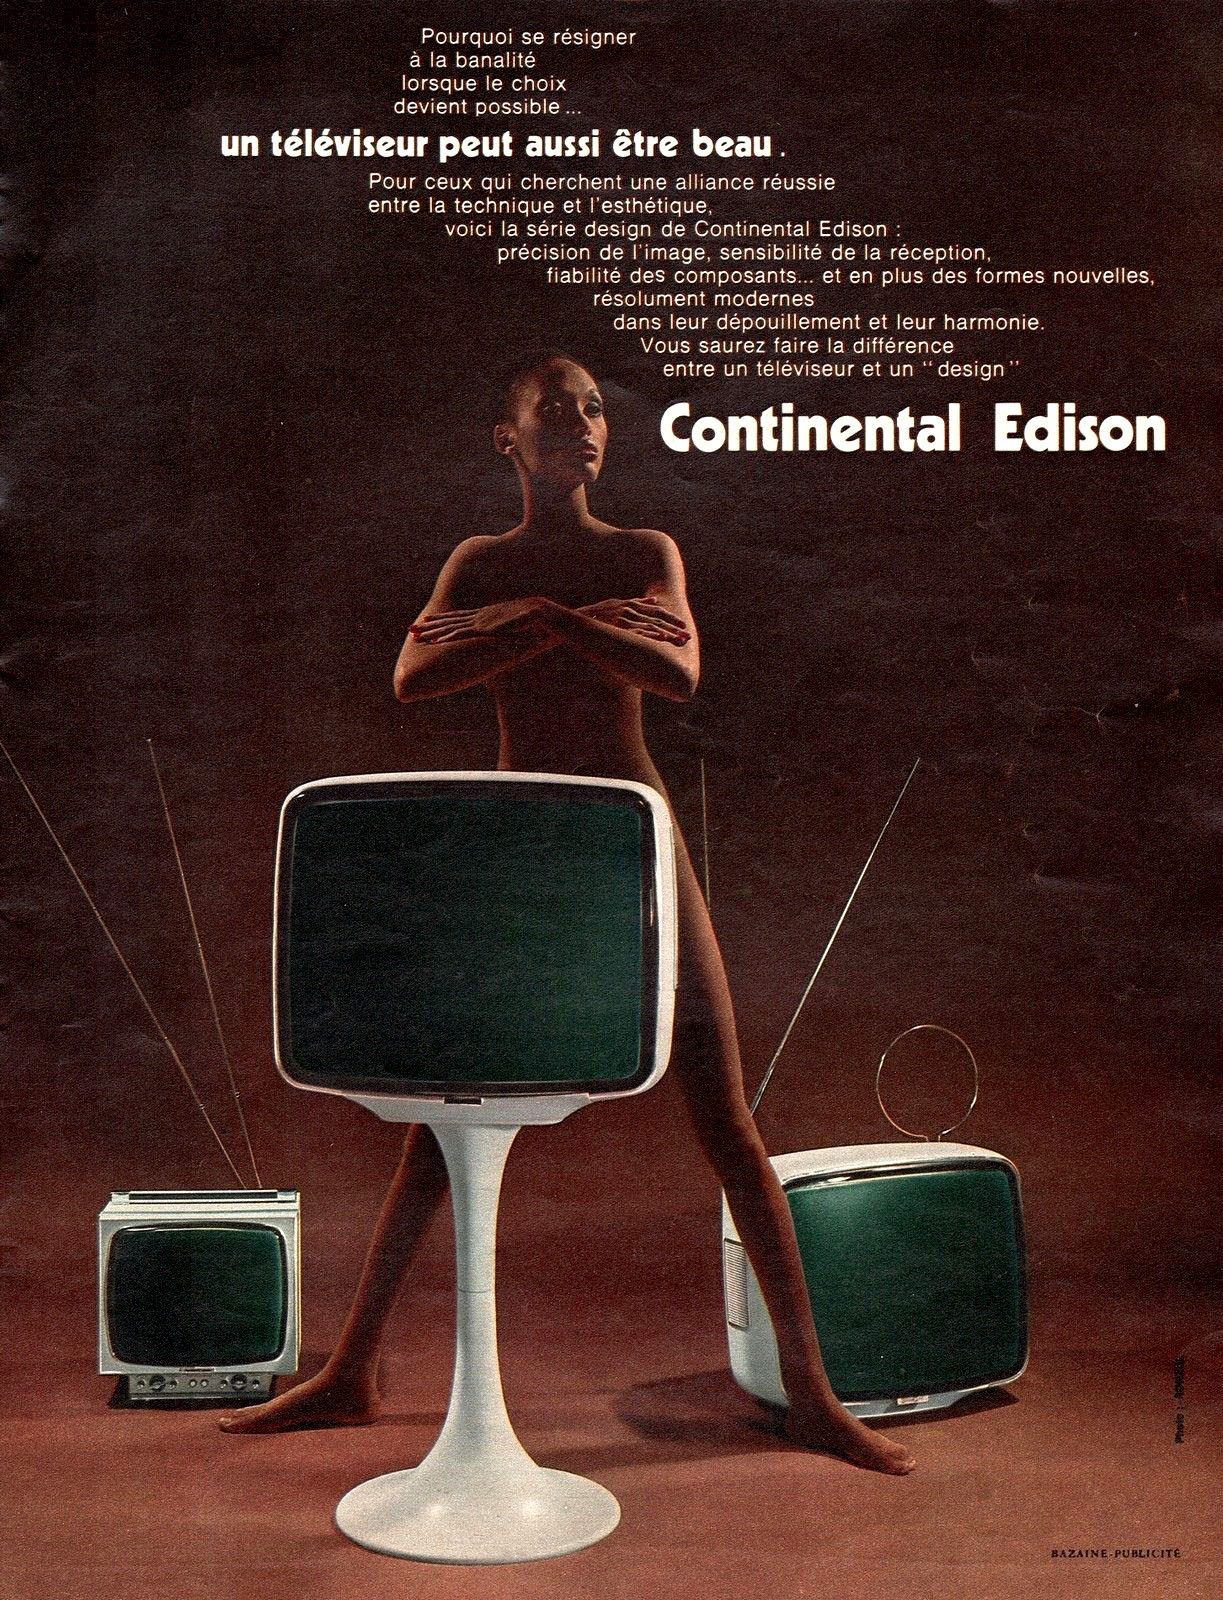 TELEVISEUR TV CONTIENTAL EDISON NUDE NU DESIGN AD 1971